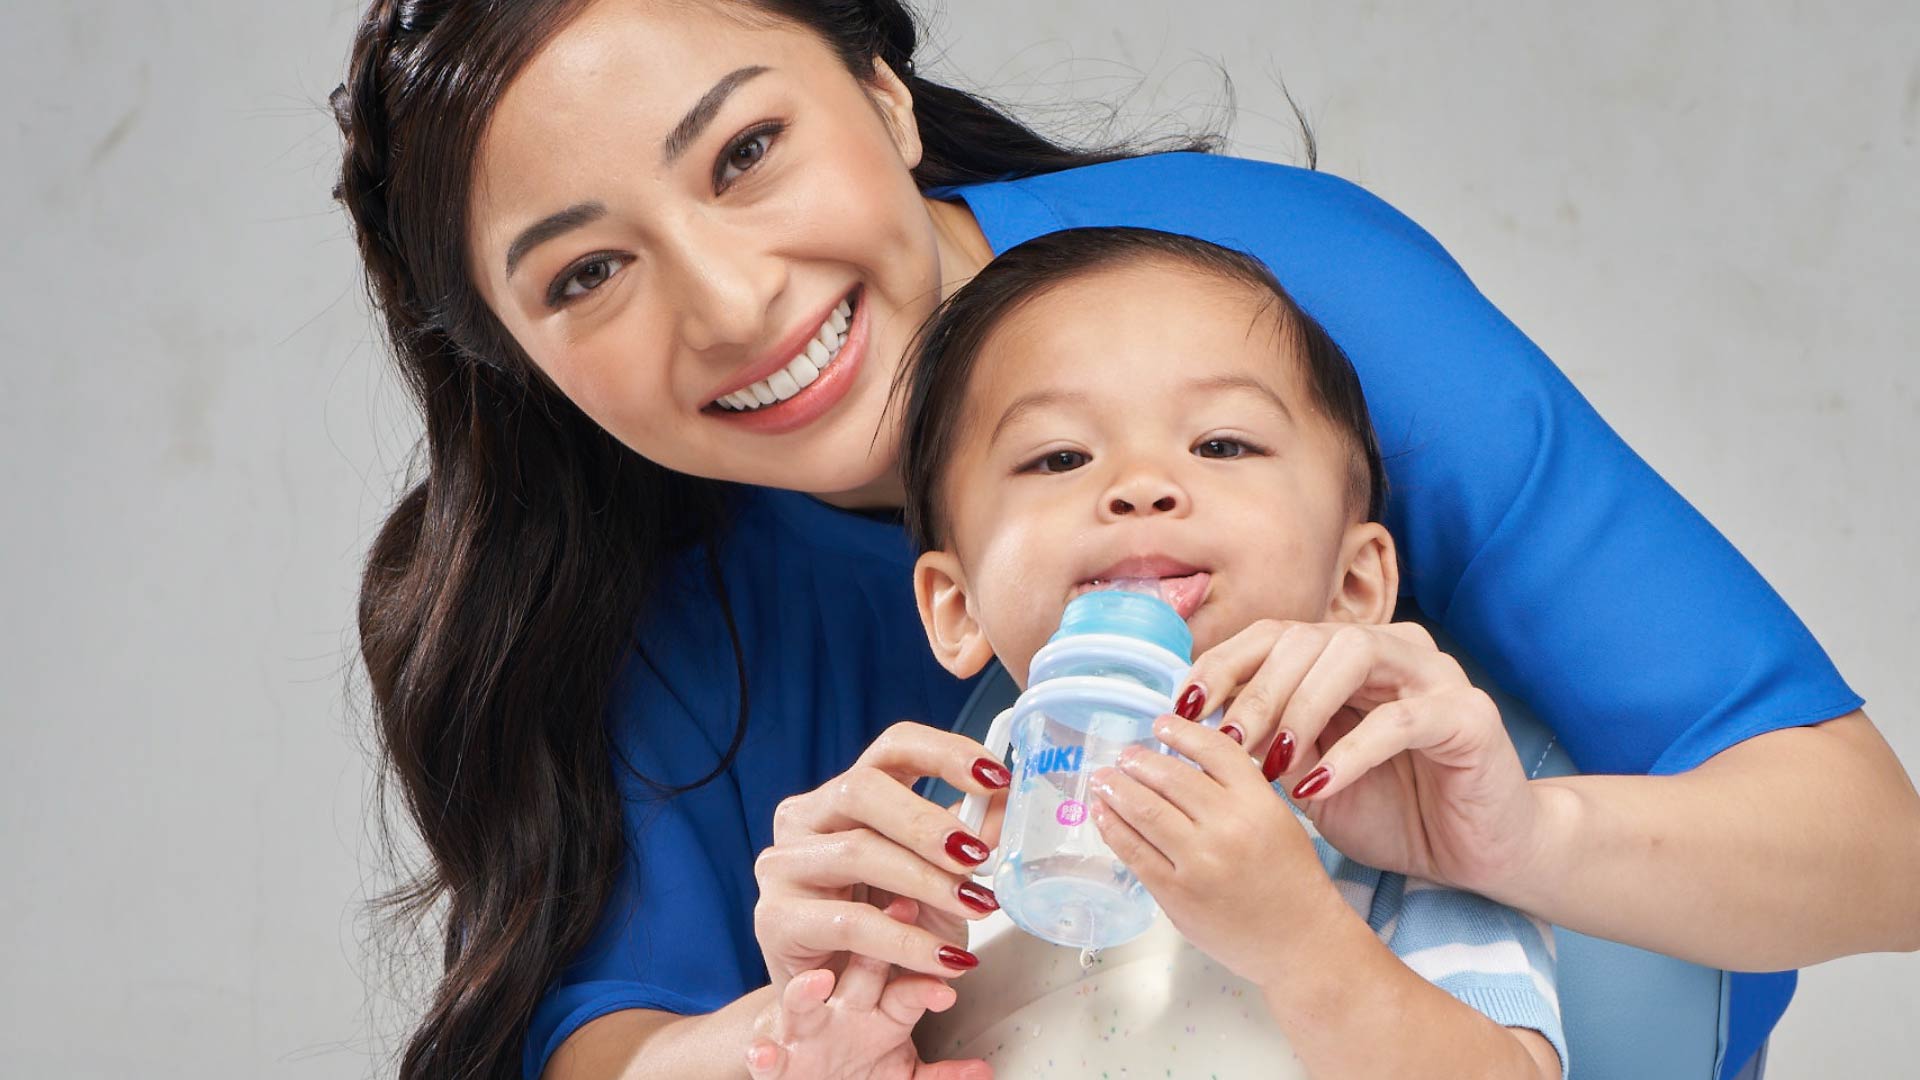 Pemilihan bentuk dan ukuran botol susu bayi yang tepat sangat penting untuk kenyamanan dan kesehatan si kecil. Pelajari panduan lengkapnya dalam artikel ini.